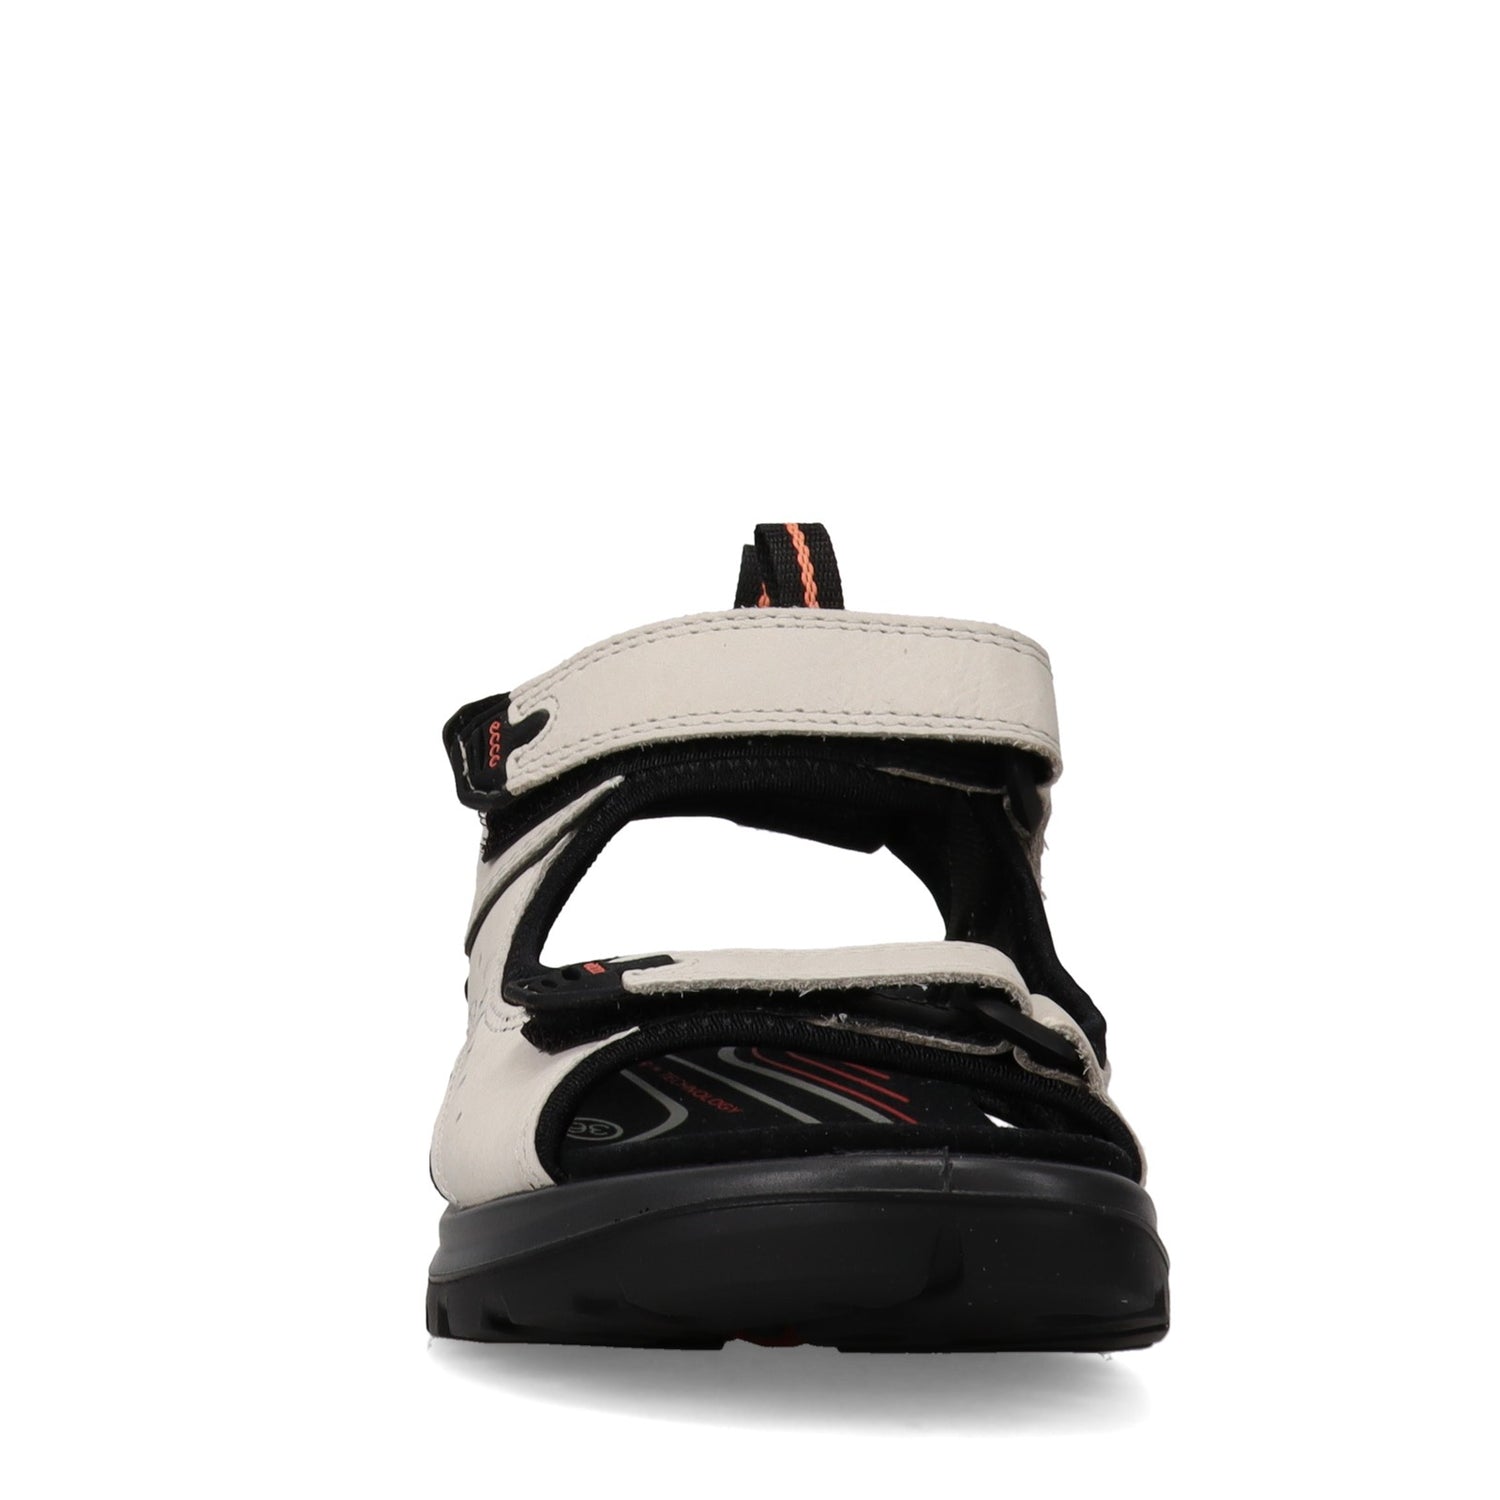 Peltz Shoes  Women's Ecco Offroad Sandal WHITE BLACK 822043-02152